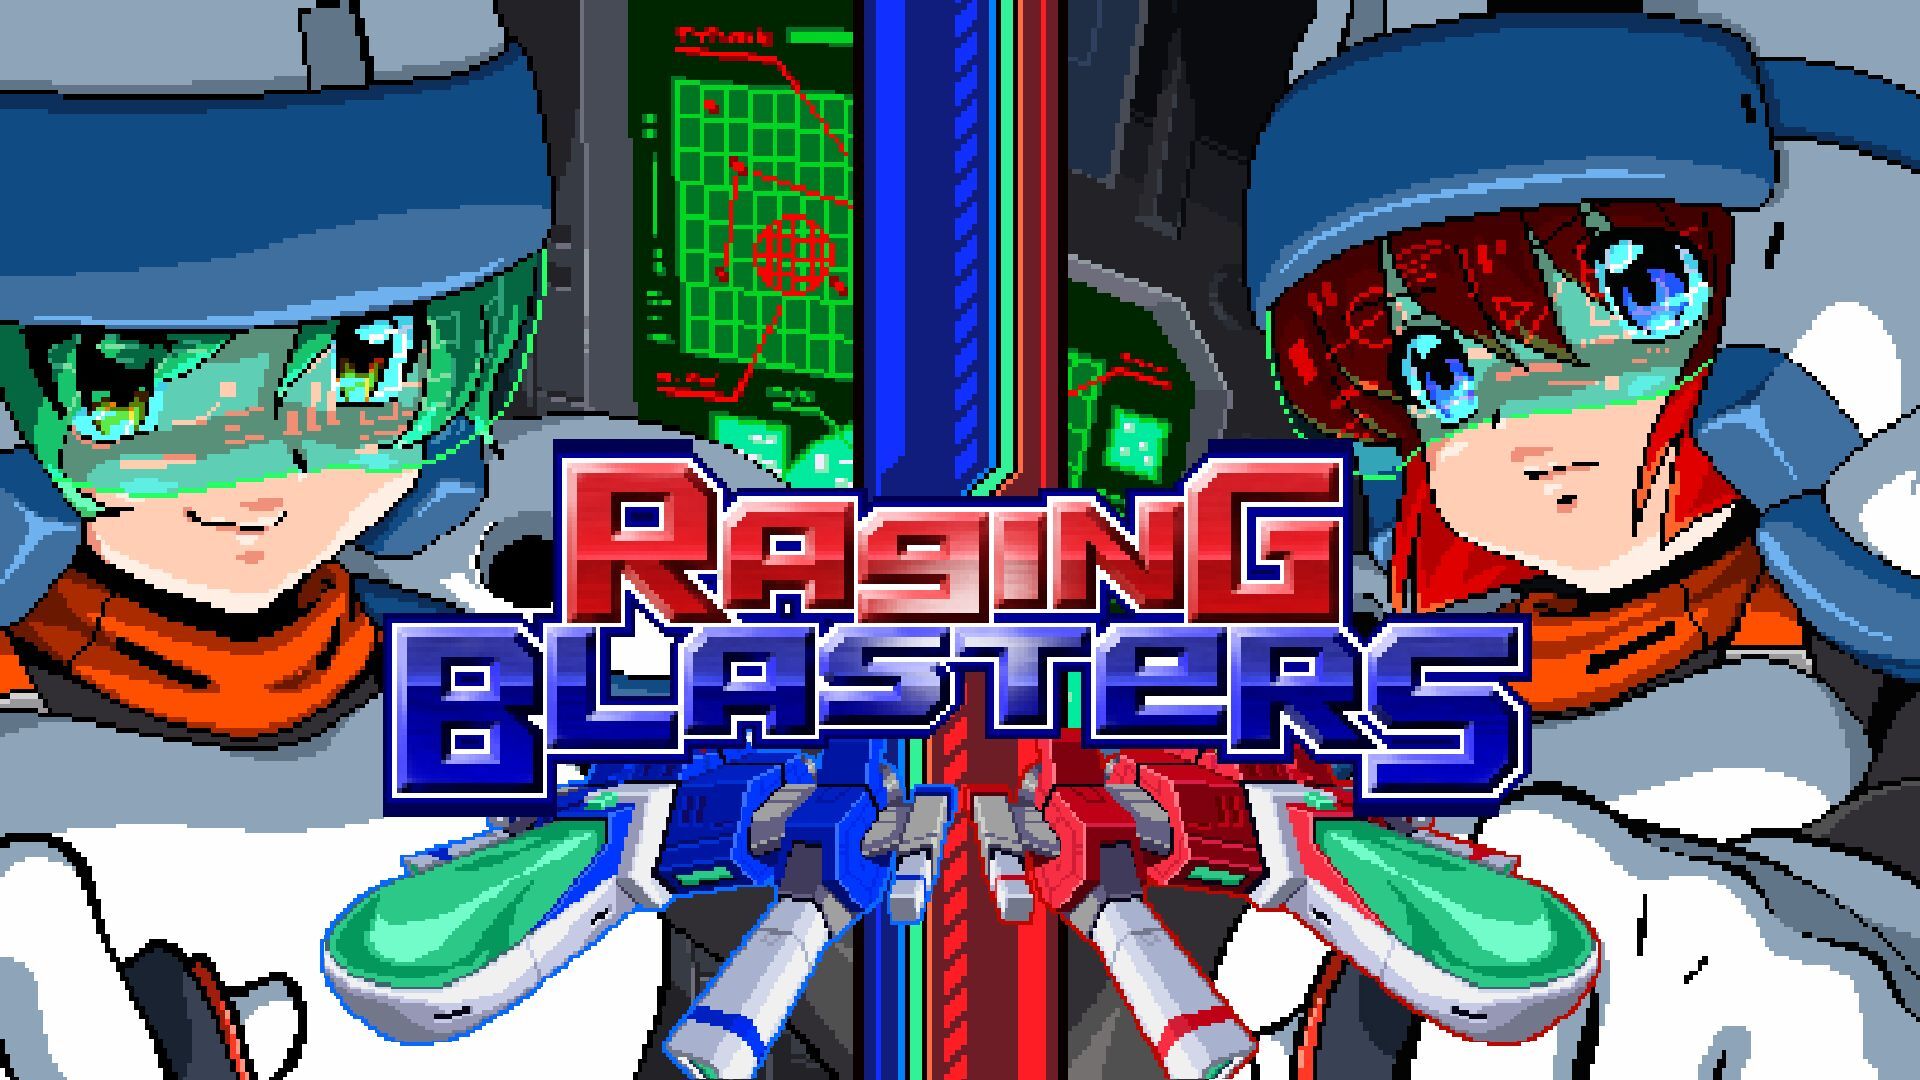 Raging Blasters